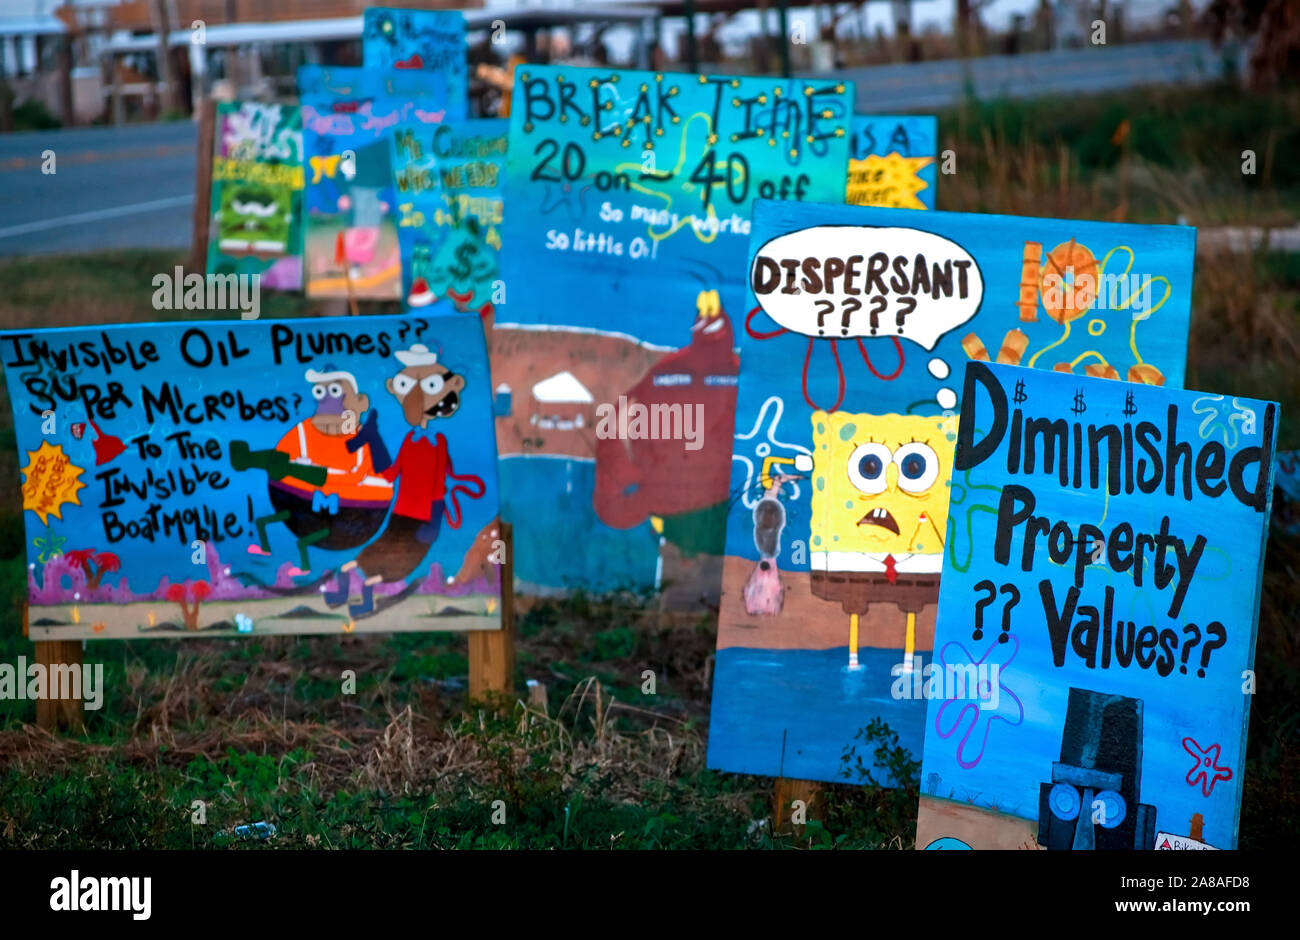 Les panneaux peints à la main le long de Louisiana Highway 1 express Grand Isle frustrations des résidents sur le déversement de pétrole de BP Deepwater Horizon, le 23 novembre 2010. Banque D'Images